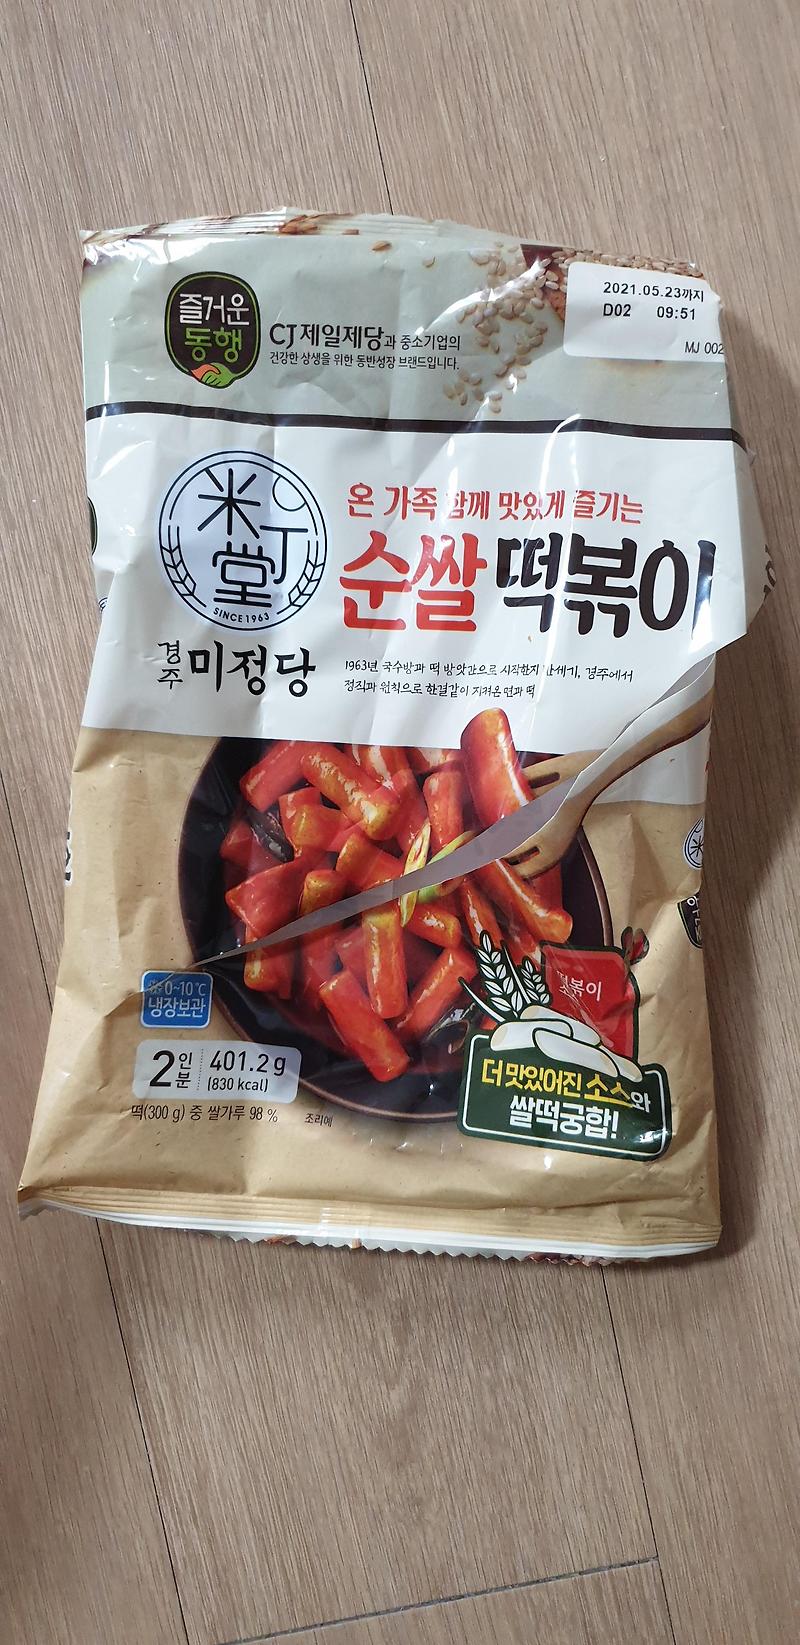 경주 미정당 순쌀 떡볶이 리뷰 및 후기!